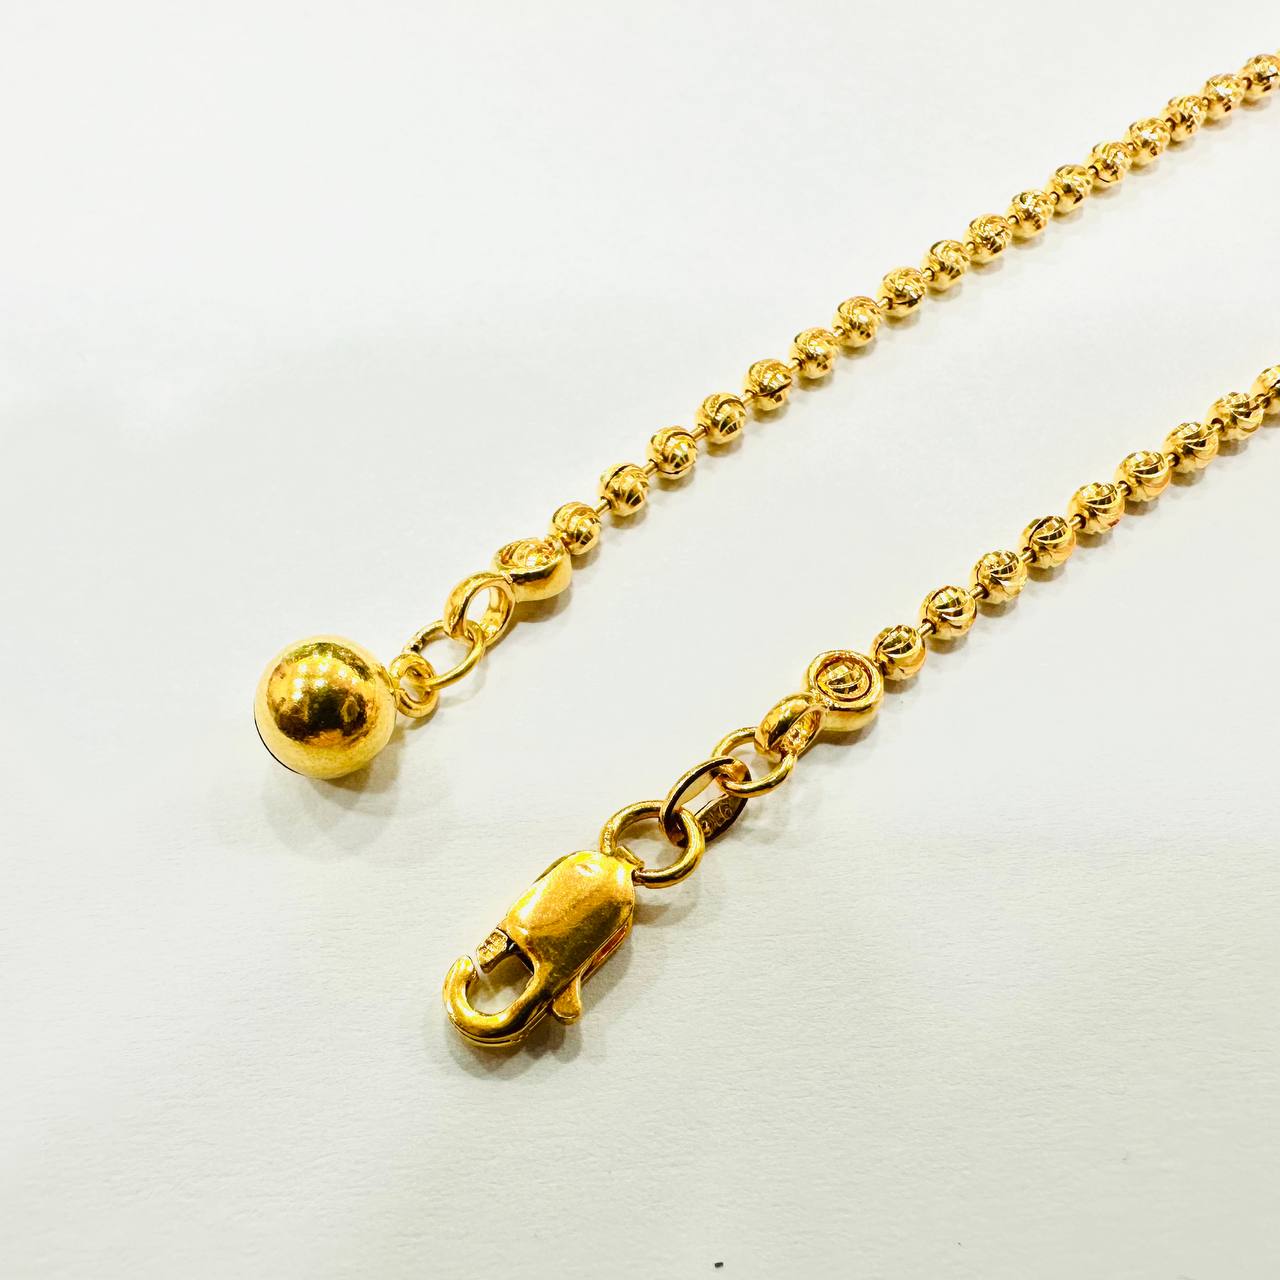 22k / 916 Gold Shiny Ball Anklet-916 gold-Best Gold Shop